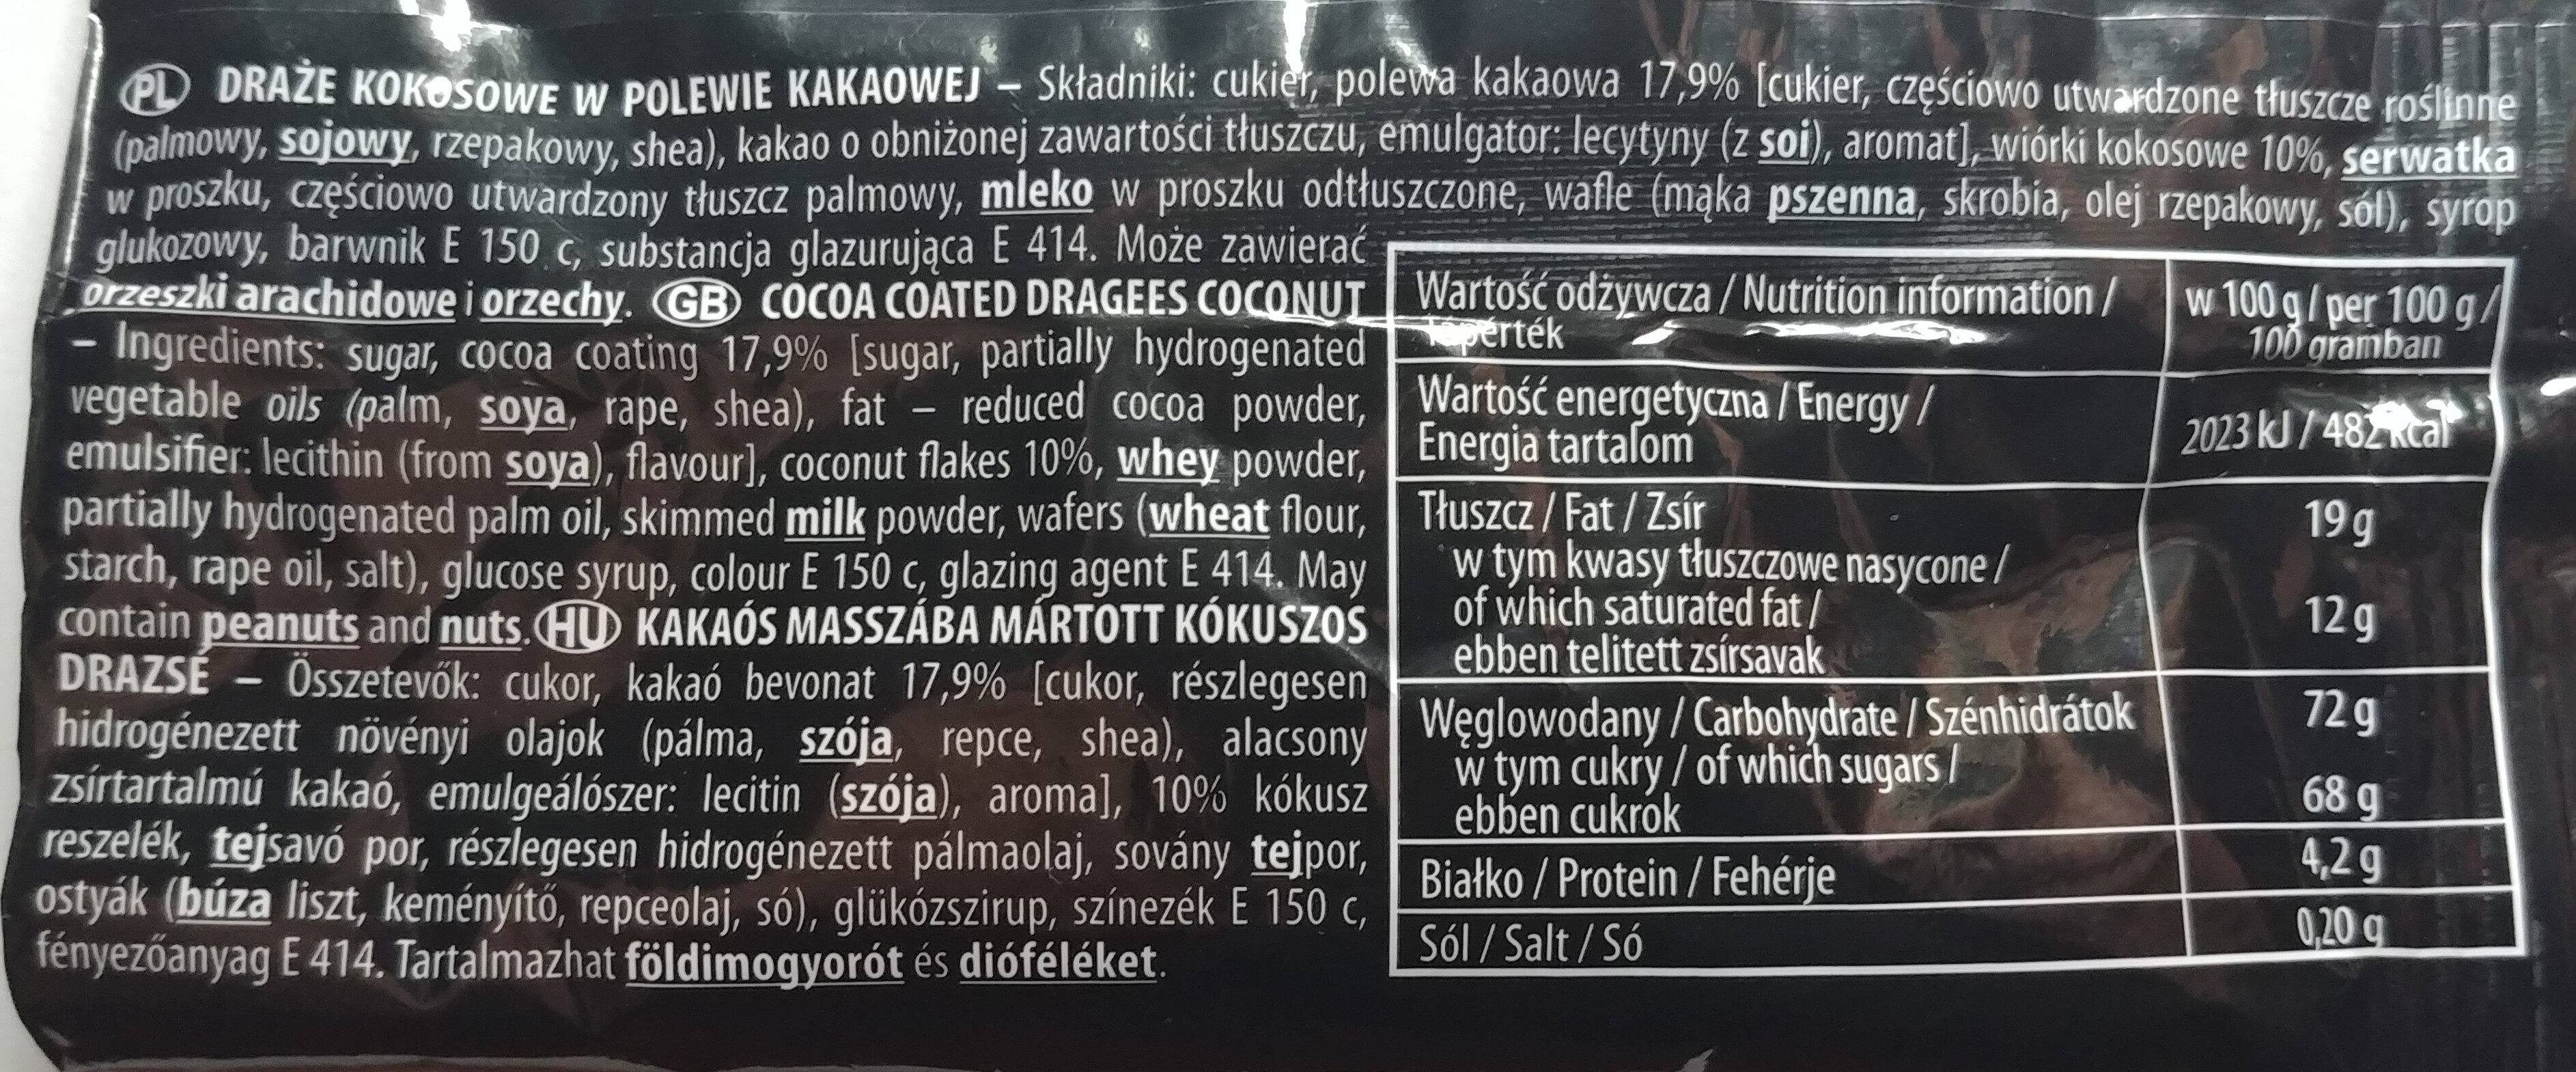 Draże Korsarz Kokosowe - Ingrediënten - pl